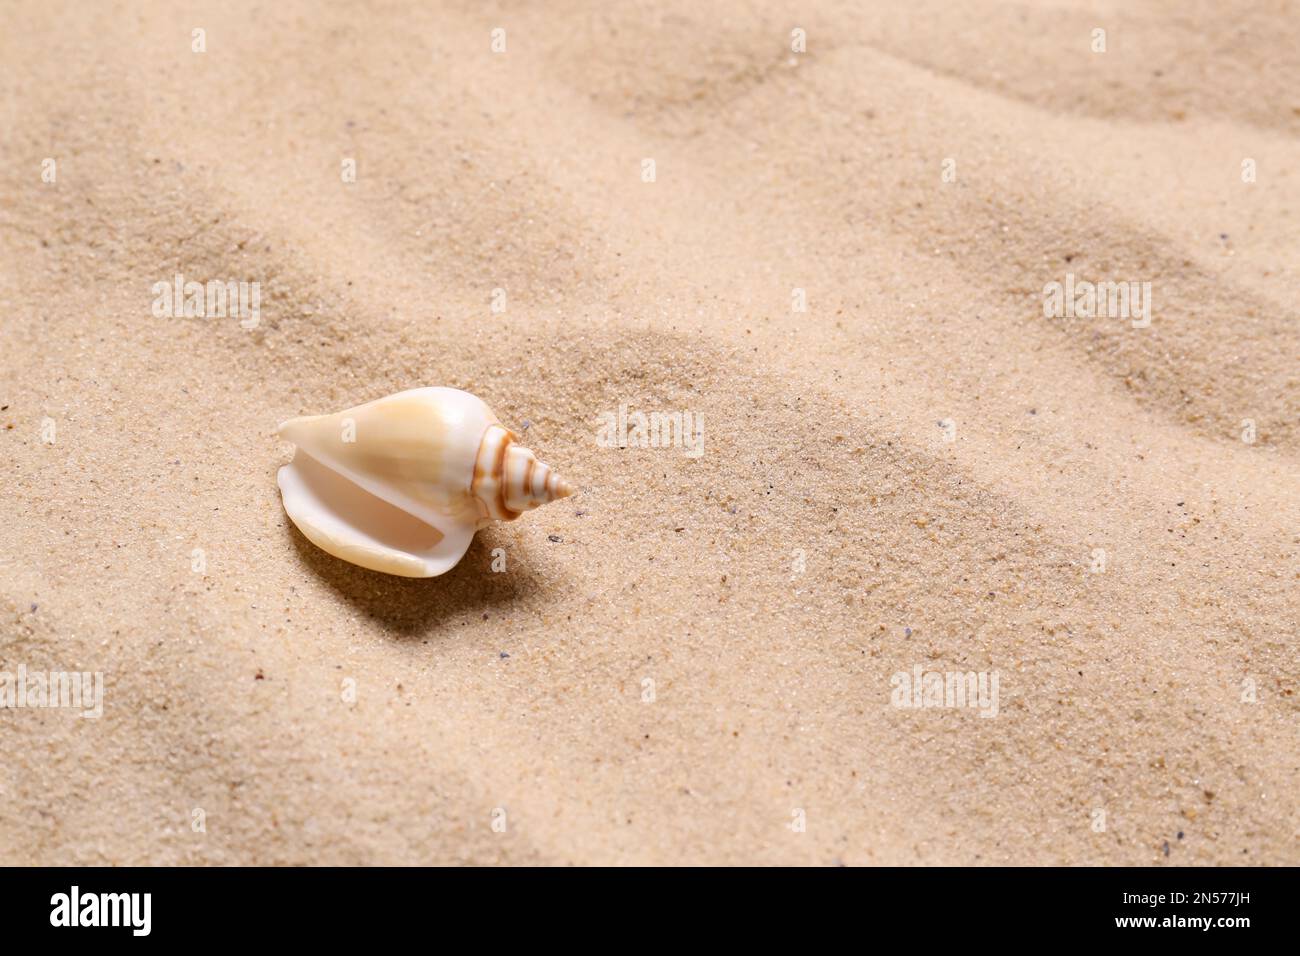 Magnifique seashell sur la plage de sable, espace pour le texte. Vacances d'été Banque D'Images